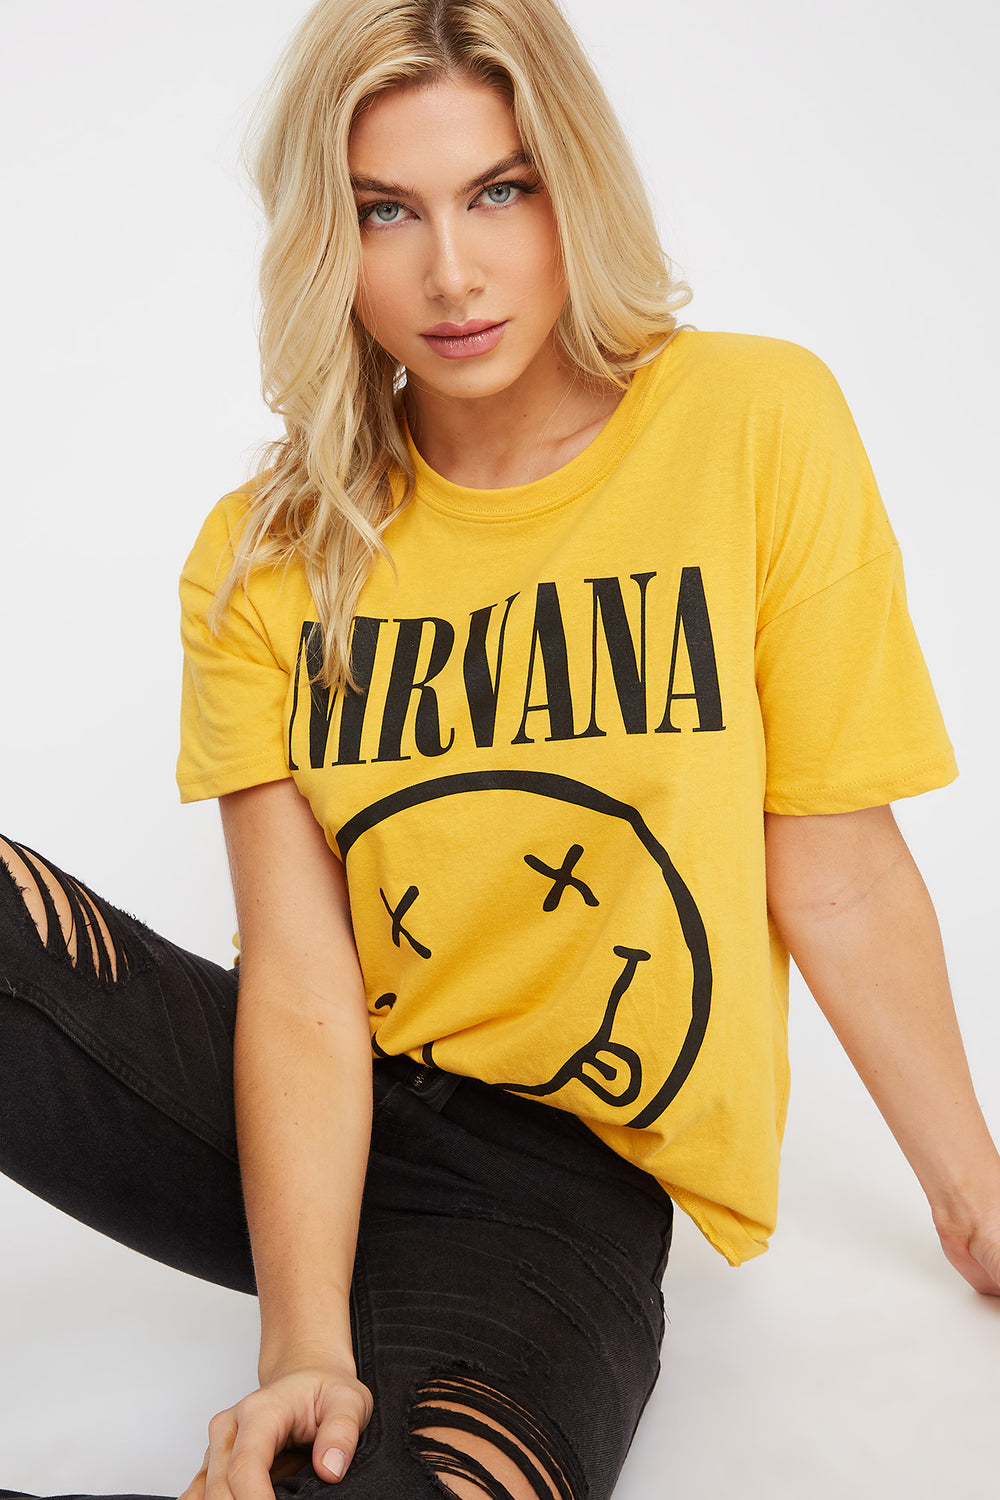 yellow nirvana shirt